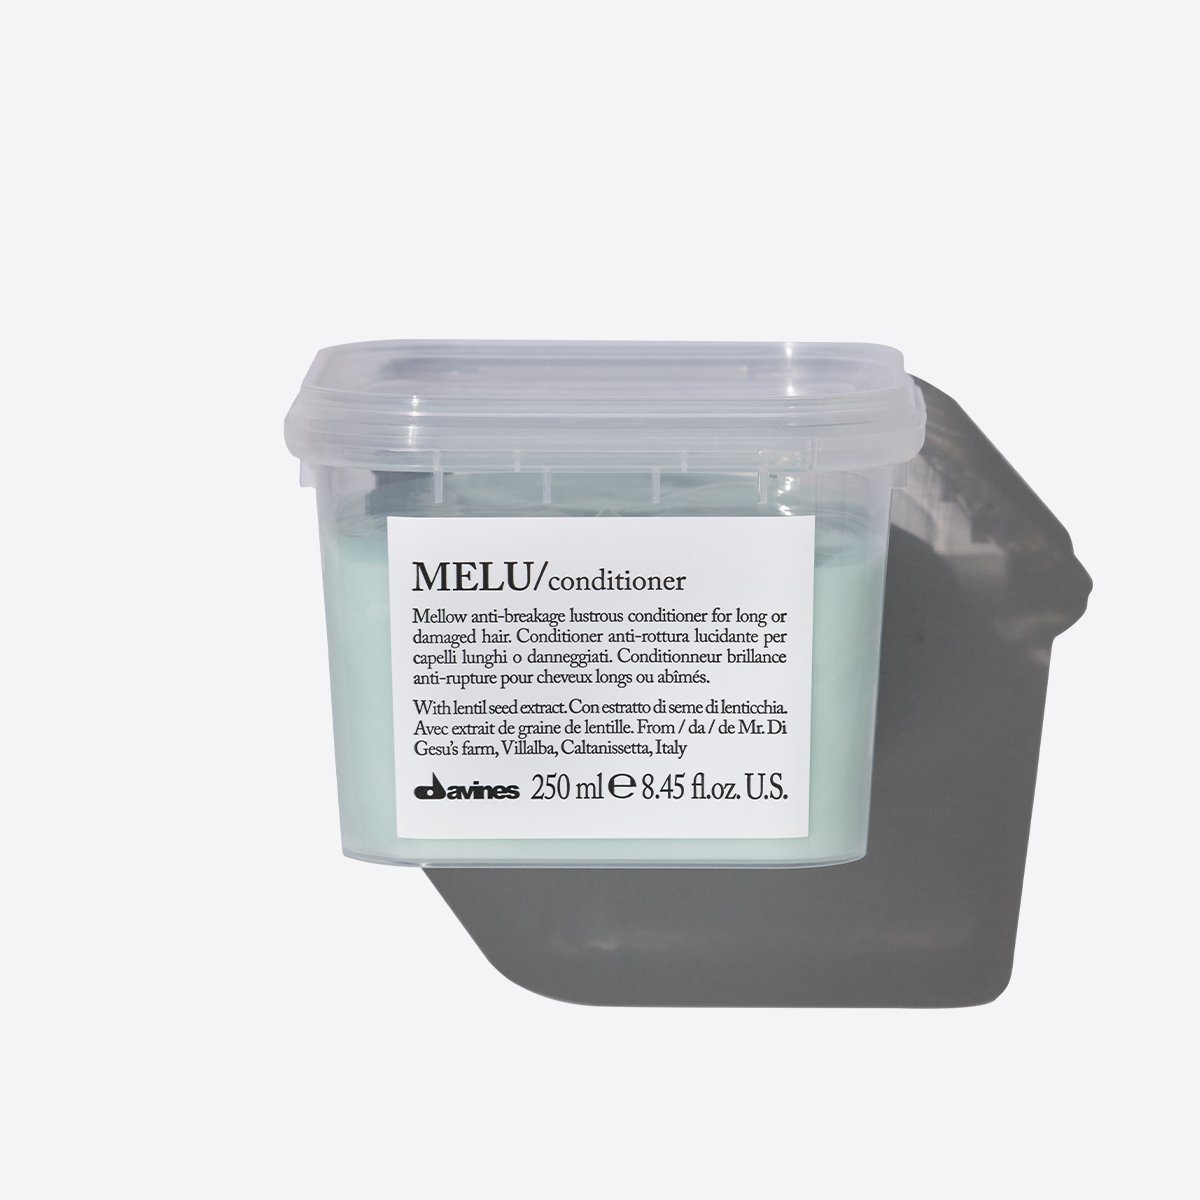 Essential Melu Conditioner